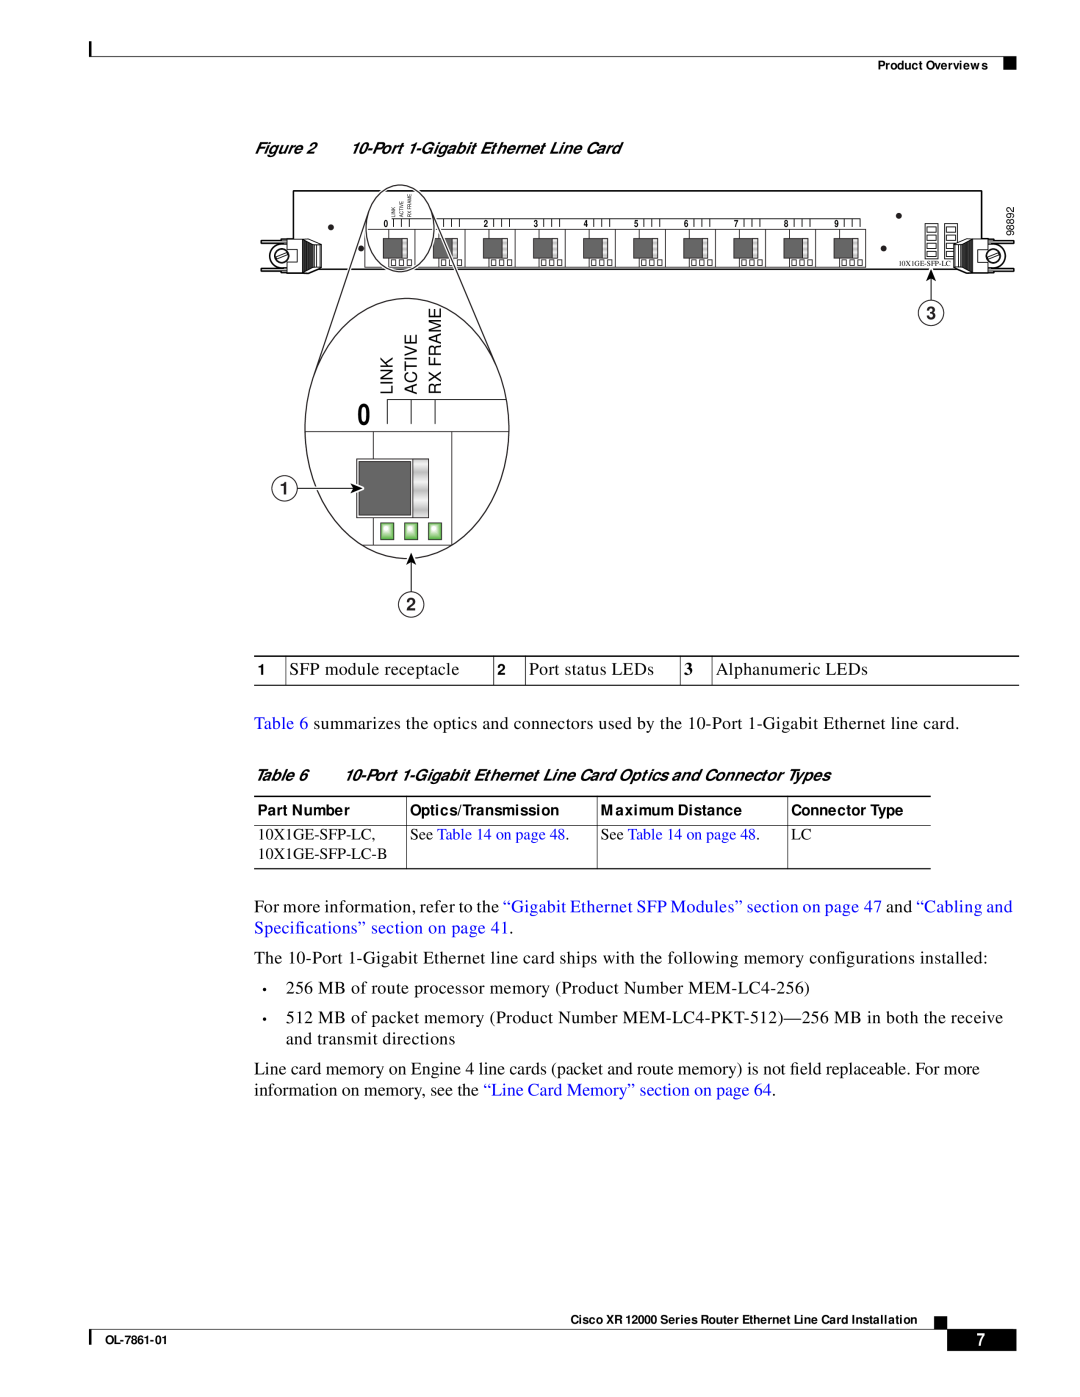 Cisco Systems OL-7861-01 manual Link, Active, Rx Frame, 10-Port 1-Gigabit Ethernet Line Card 